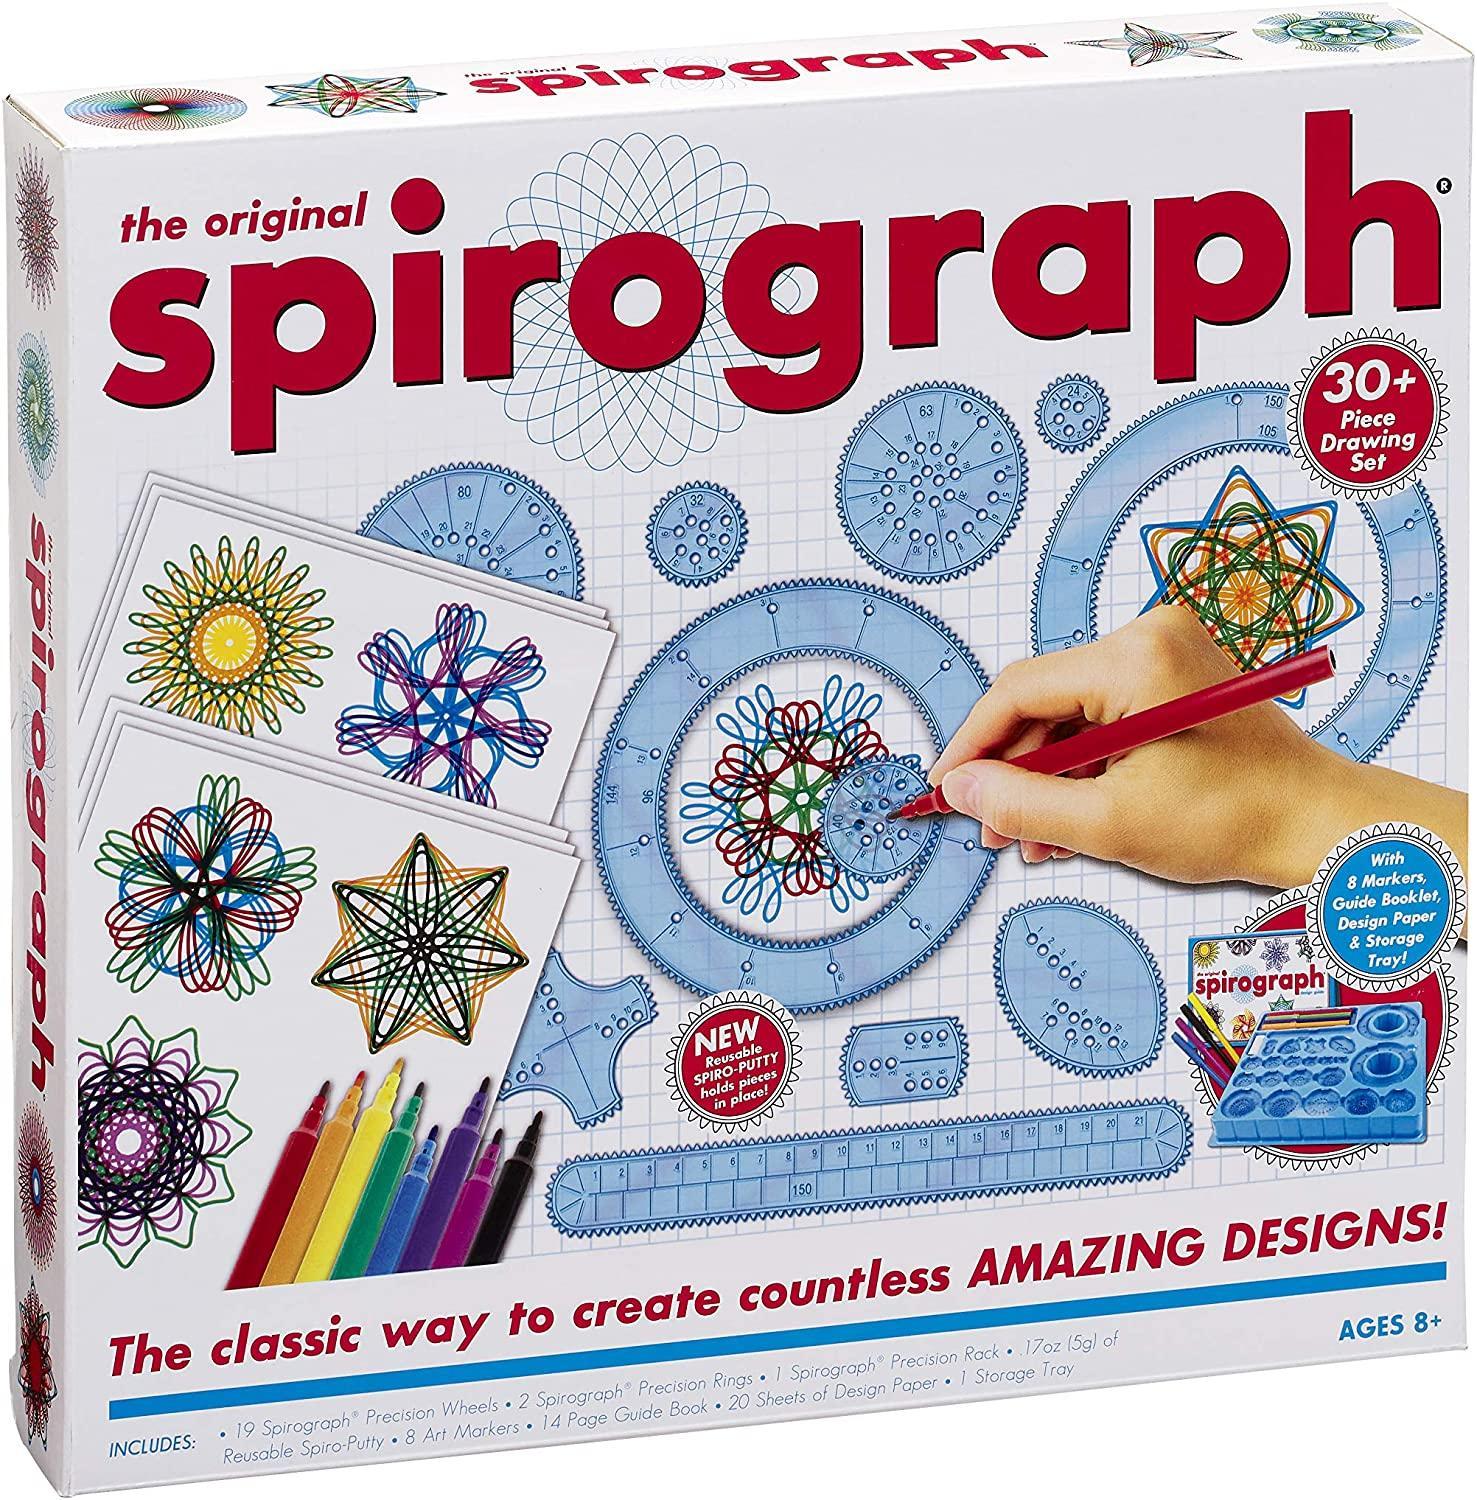 grandi giochi spirograph